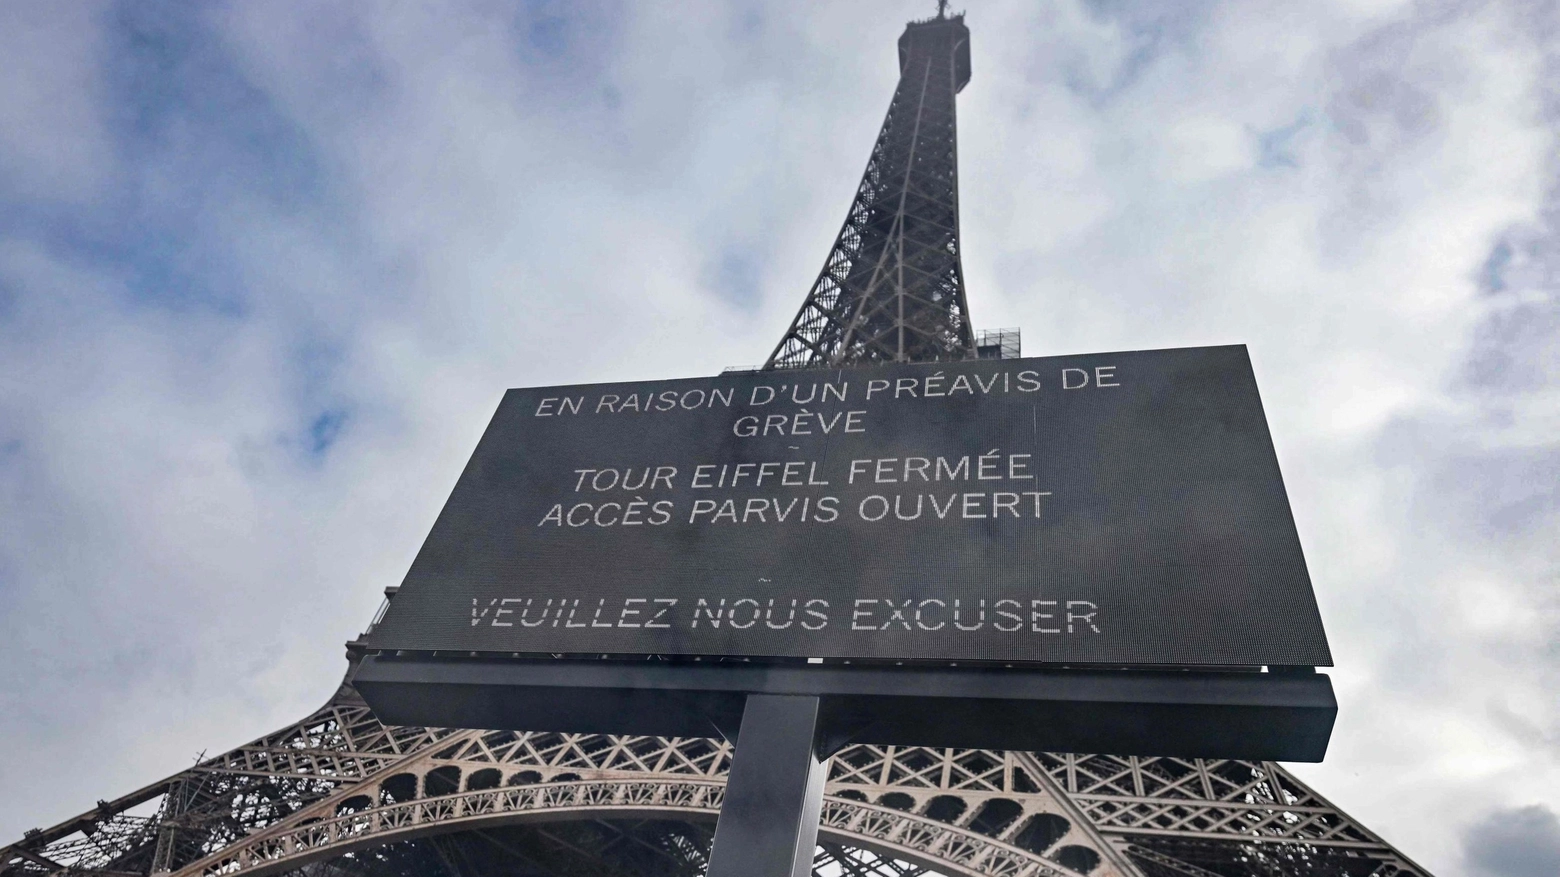 Torre Eiffel chiusa per sciopero il giorno dell'anniversario della morte di Gustave Eiffel 100 anni fa